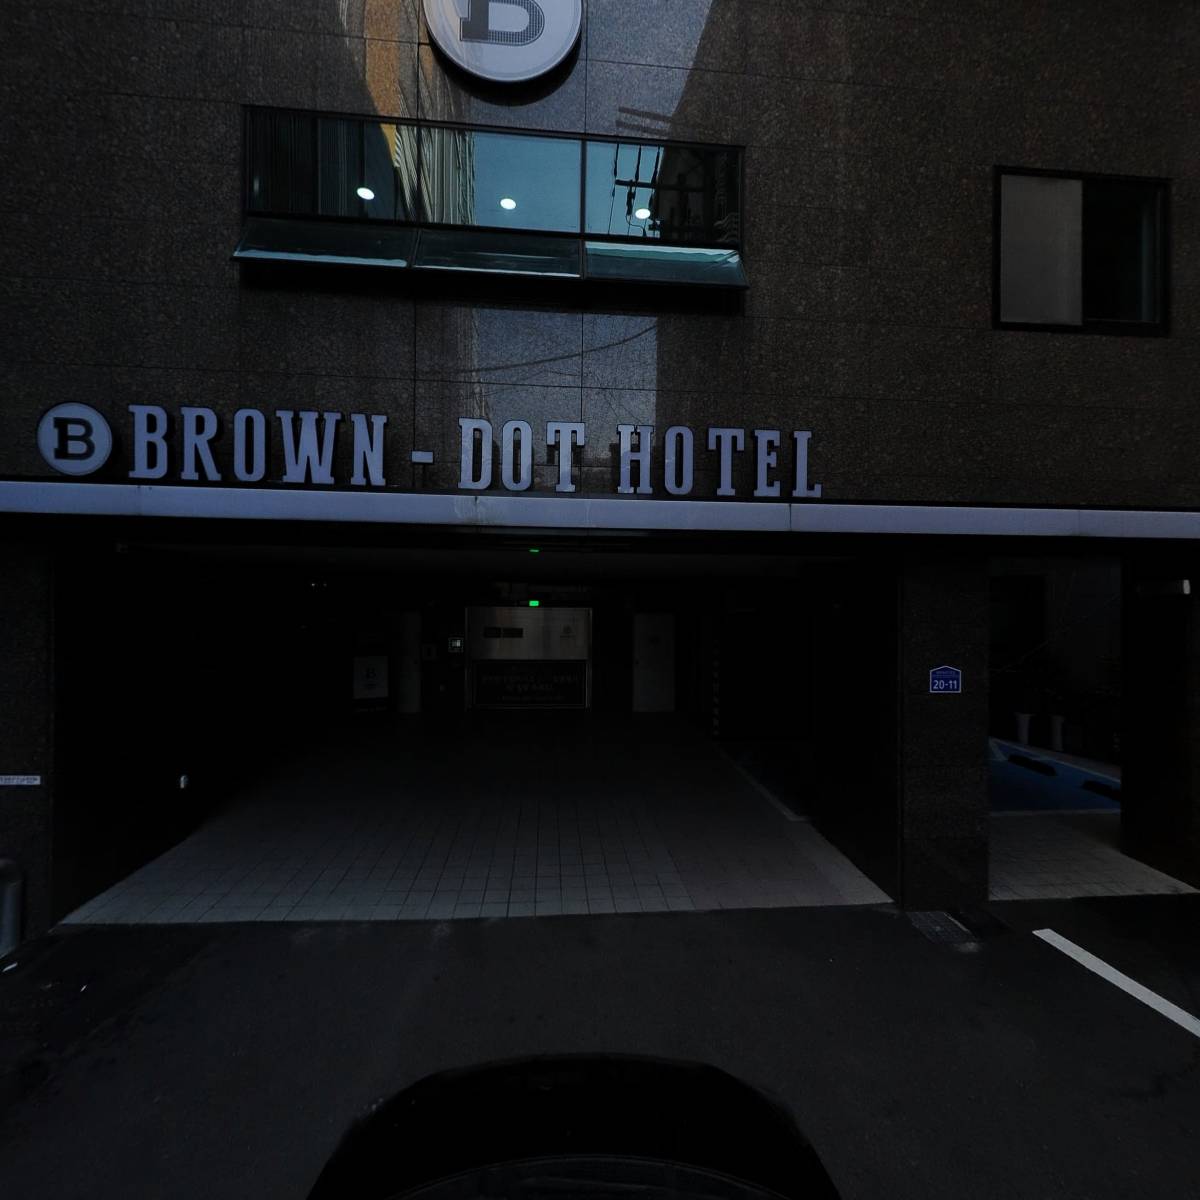 부산서면브라운도트호텔(Busan Seomyeon Brown-dot Hotel)_4